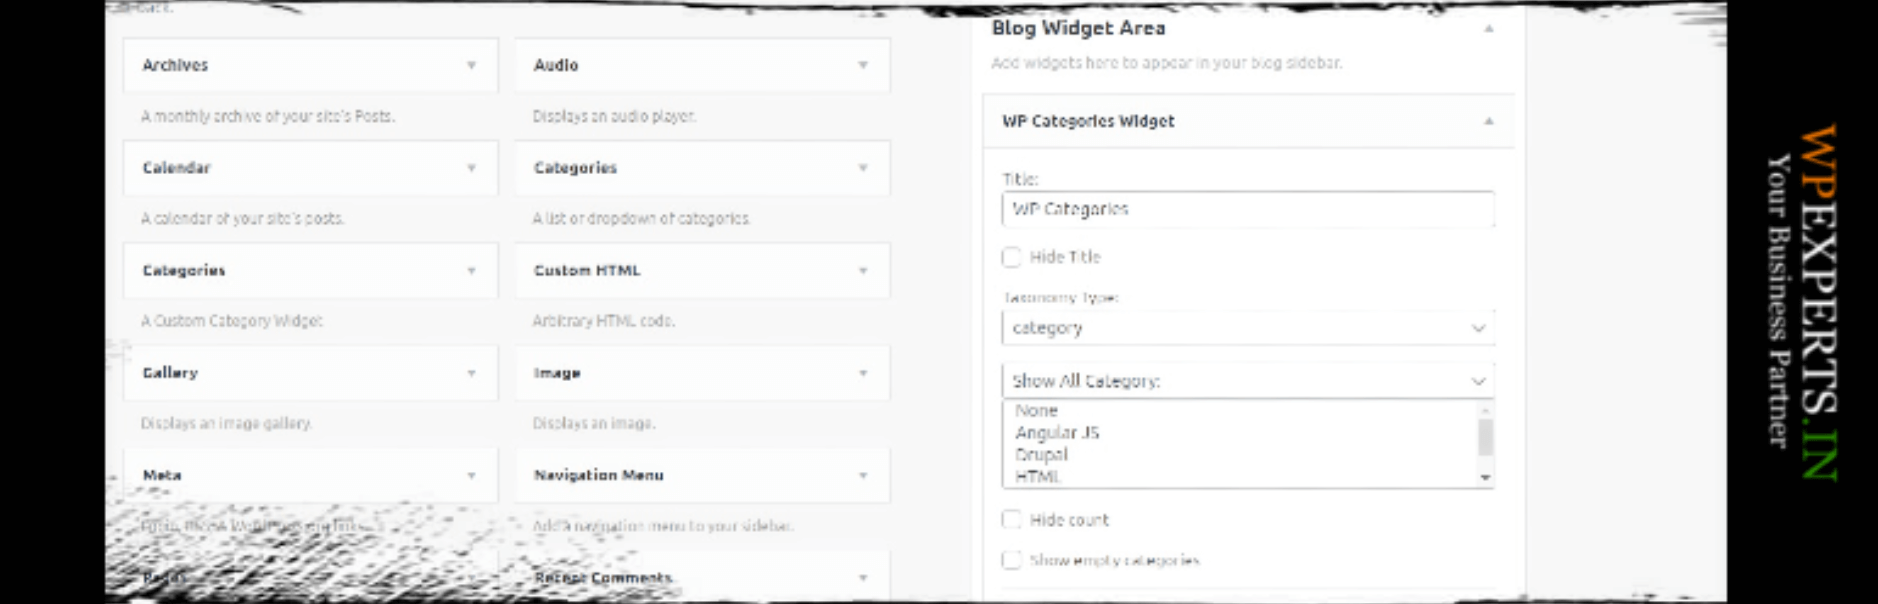 wp-categories-widget